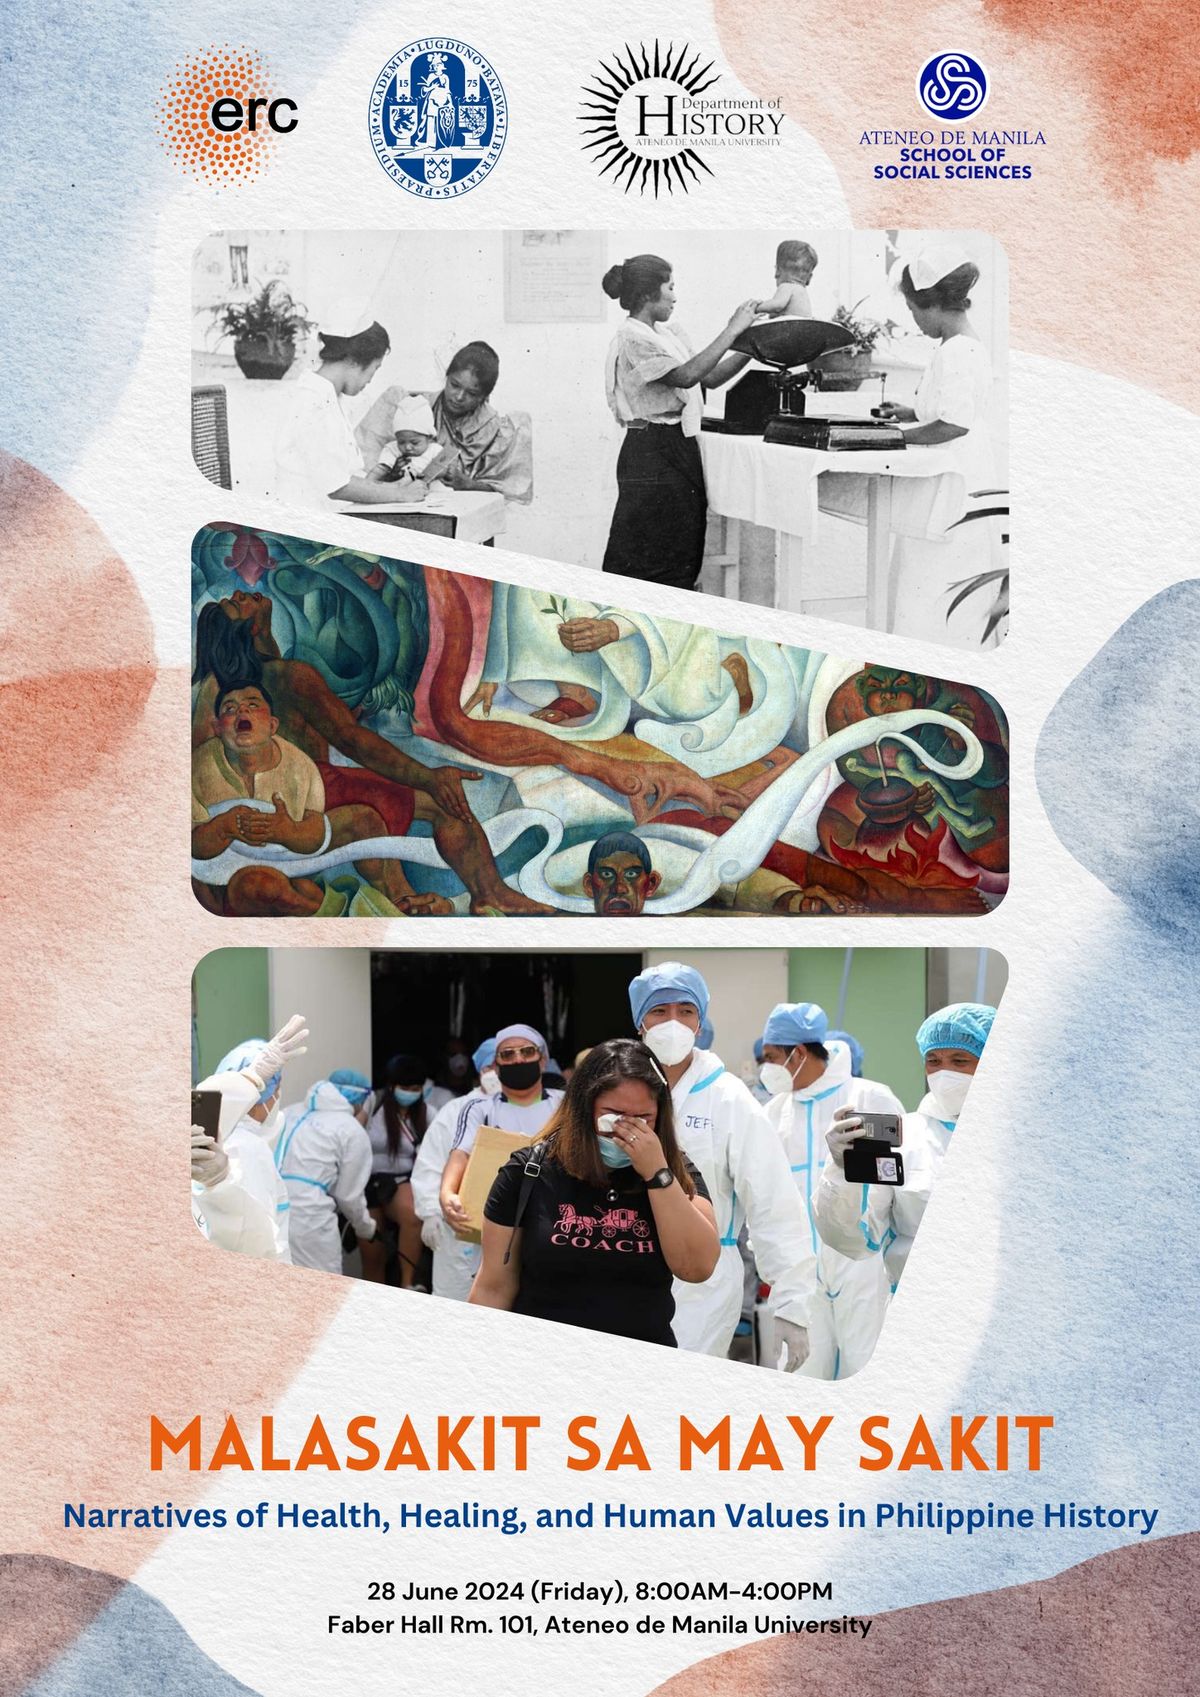 Malasakit Sa May Sakit: Narratives of Health, Healing, and Human Values in Philippine History